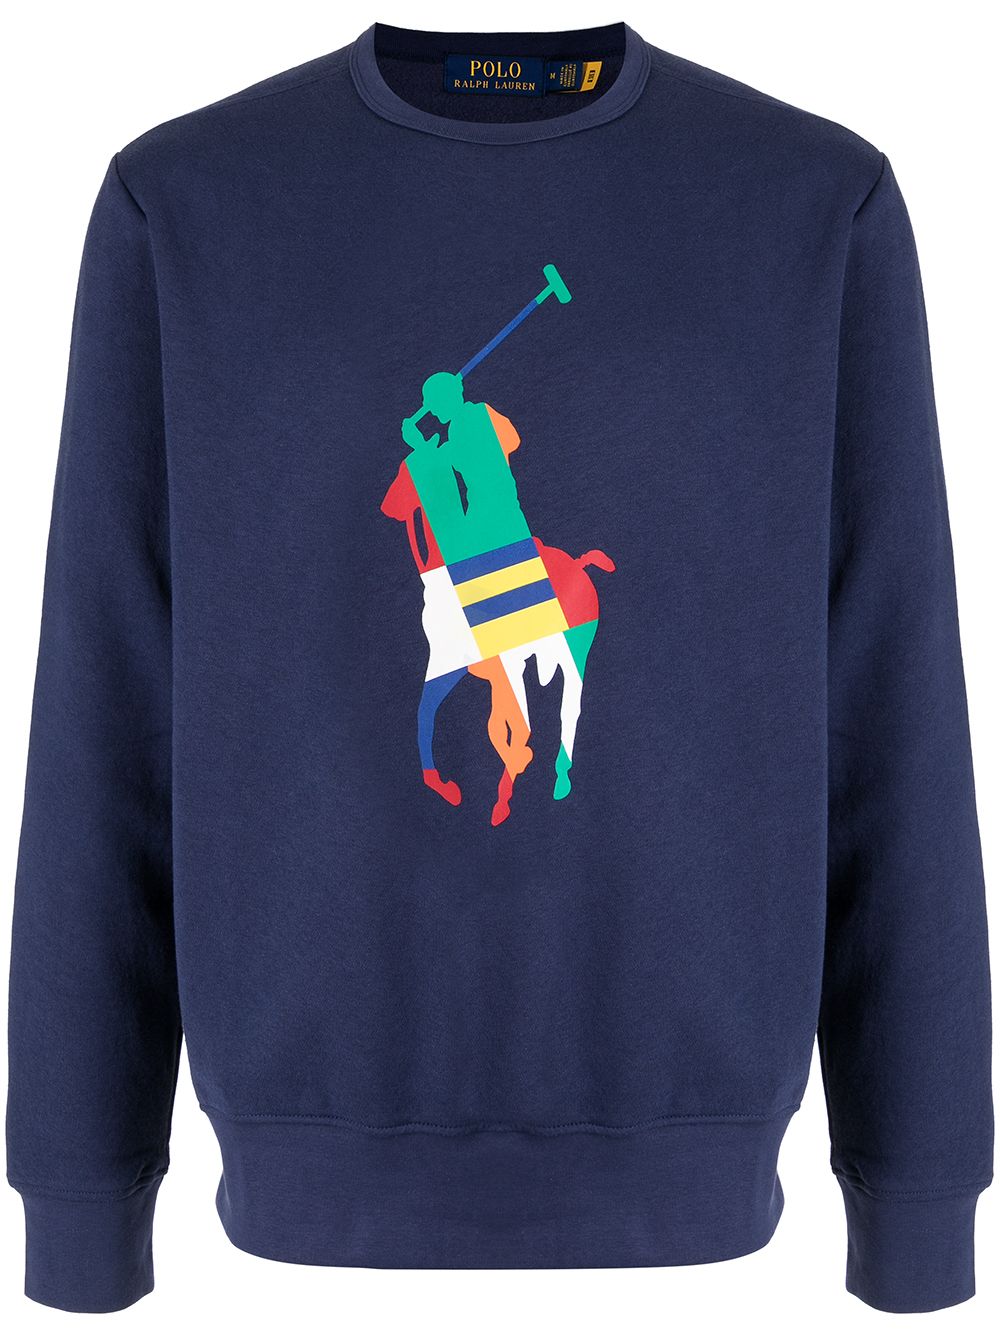 фото Polo ralph lauren свитер с логотипом